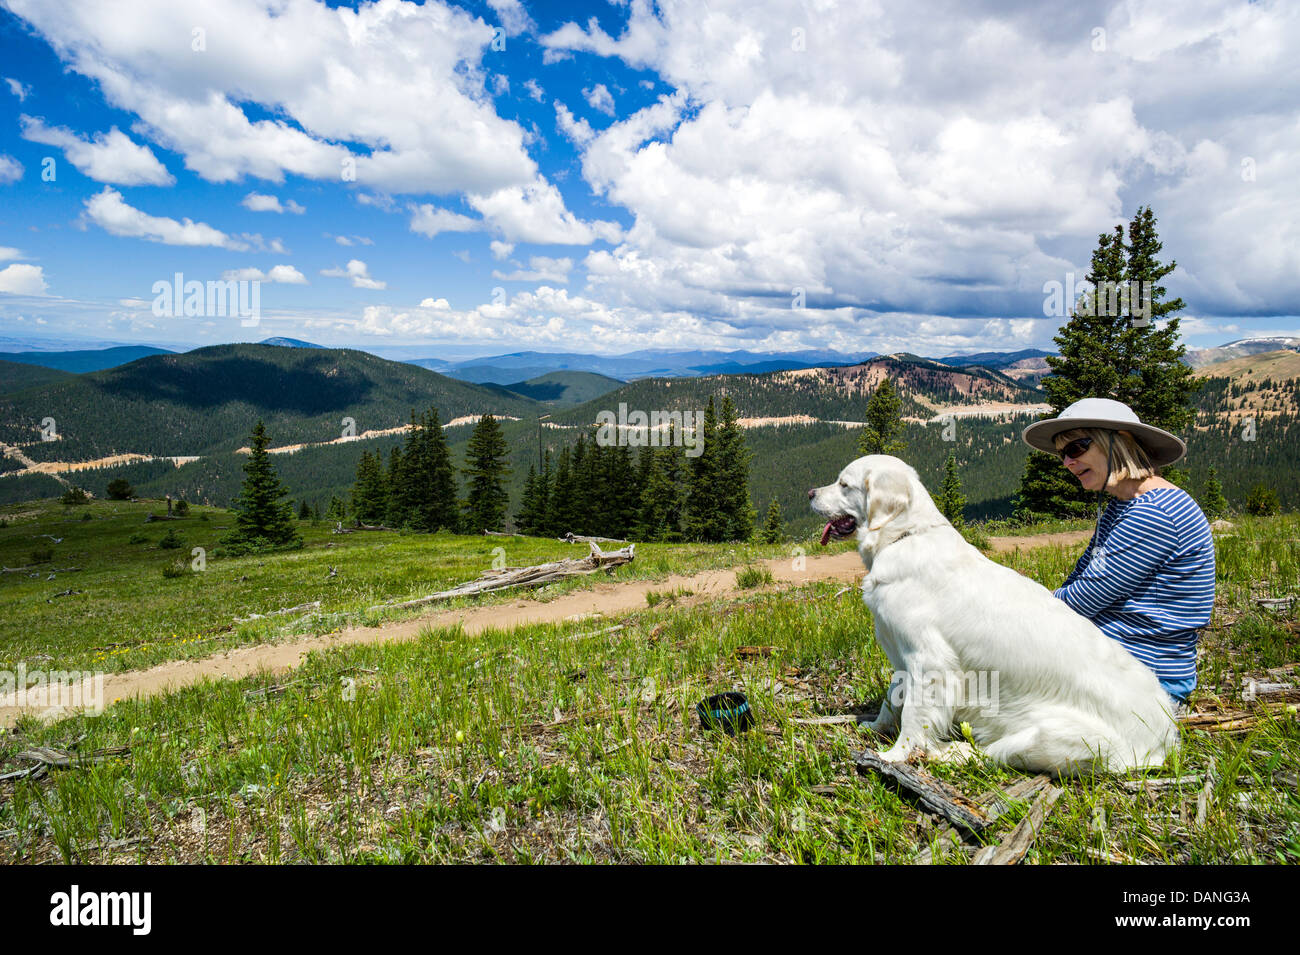 Lone donna & Platinum Golden Retriever cane mettendo in pausa per godere la vista, Monarch Crest Trail, Central Colorado, STATI UNITI D'AMERICA Foto Stock